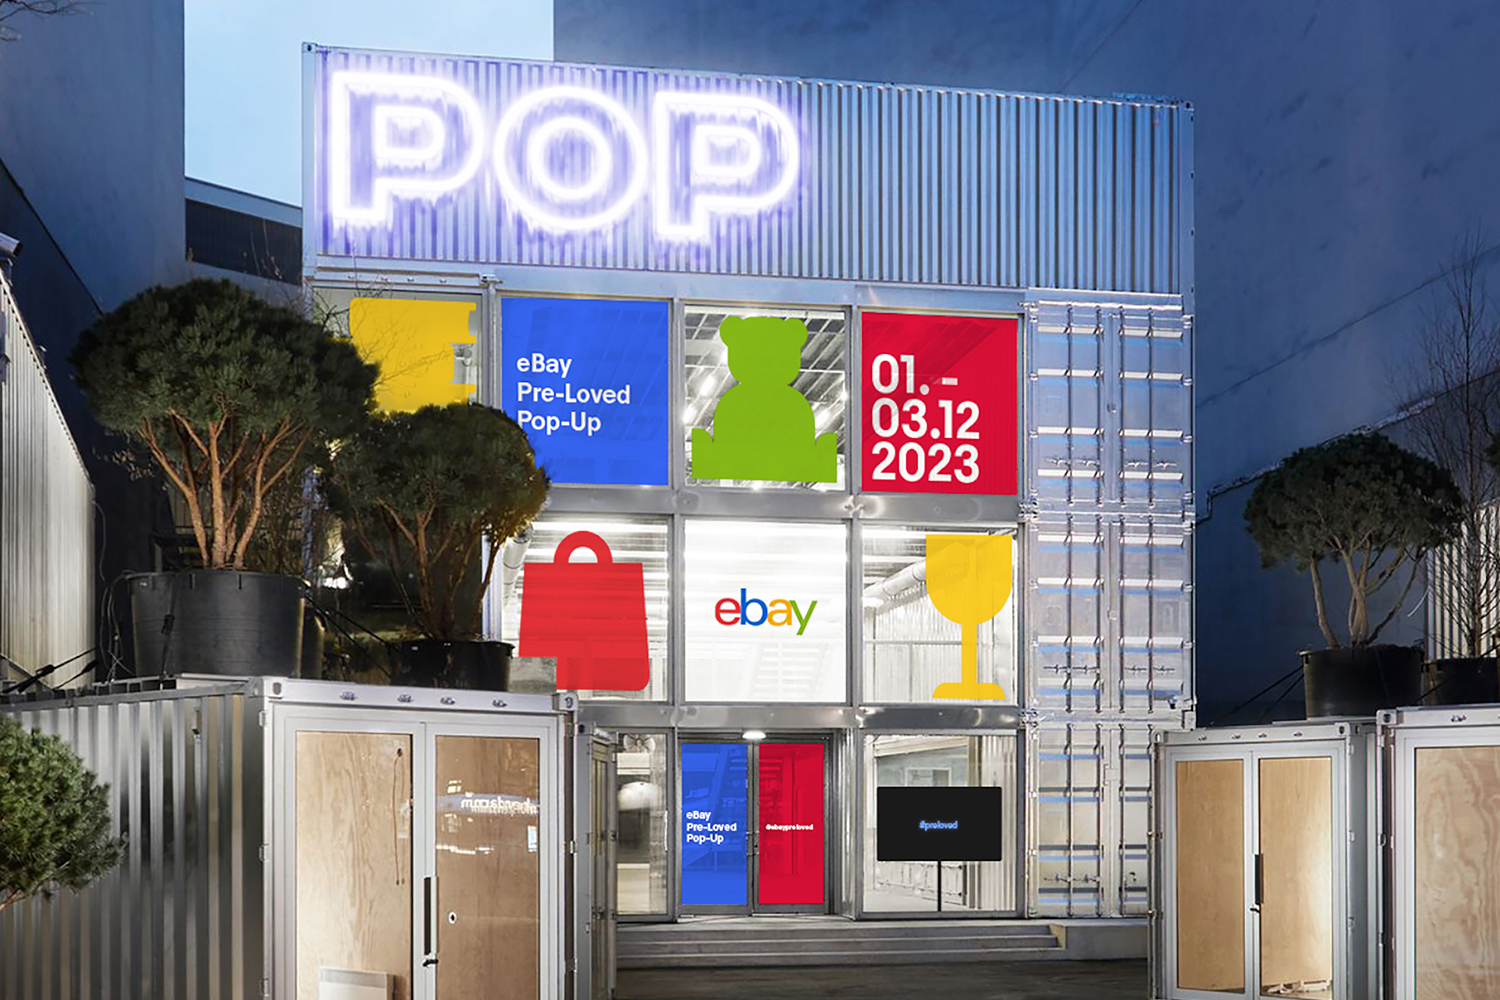 Der eBay Pre-Loved Pop-Up-Store wird auf dem Kurfürstendamm 229 zu finden sein. Foto: eBay